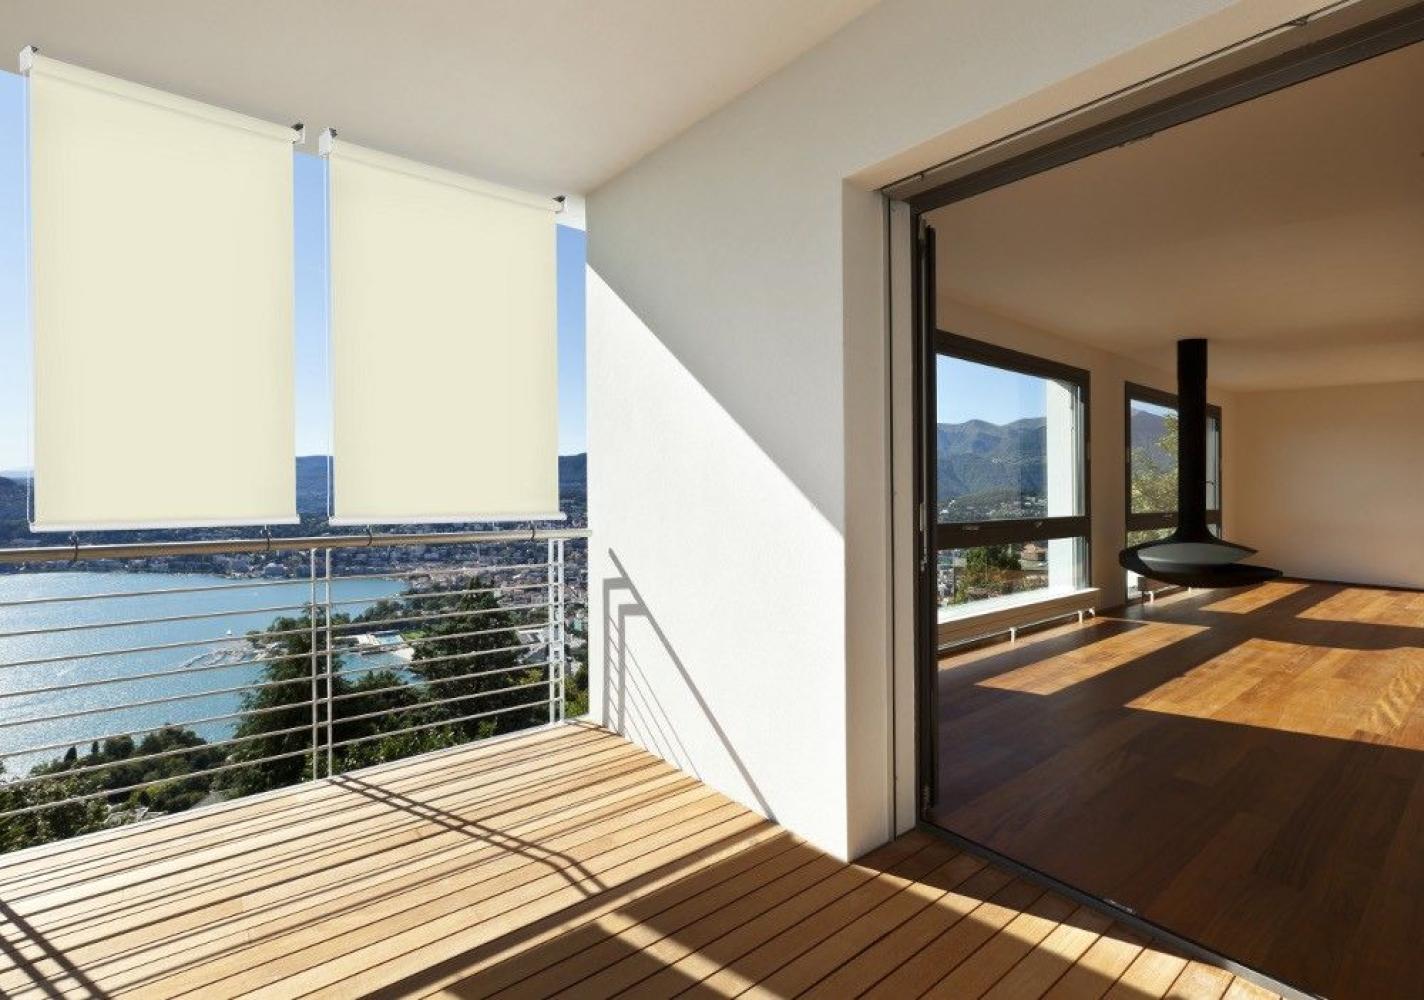 Sonnen-schutz Außen-rollo Balkon-rollo B: 140 x L: 230 cm beige creme Balkon-sicht-schutz 1 Stück Bild 1